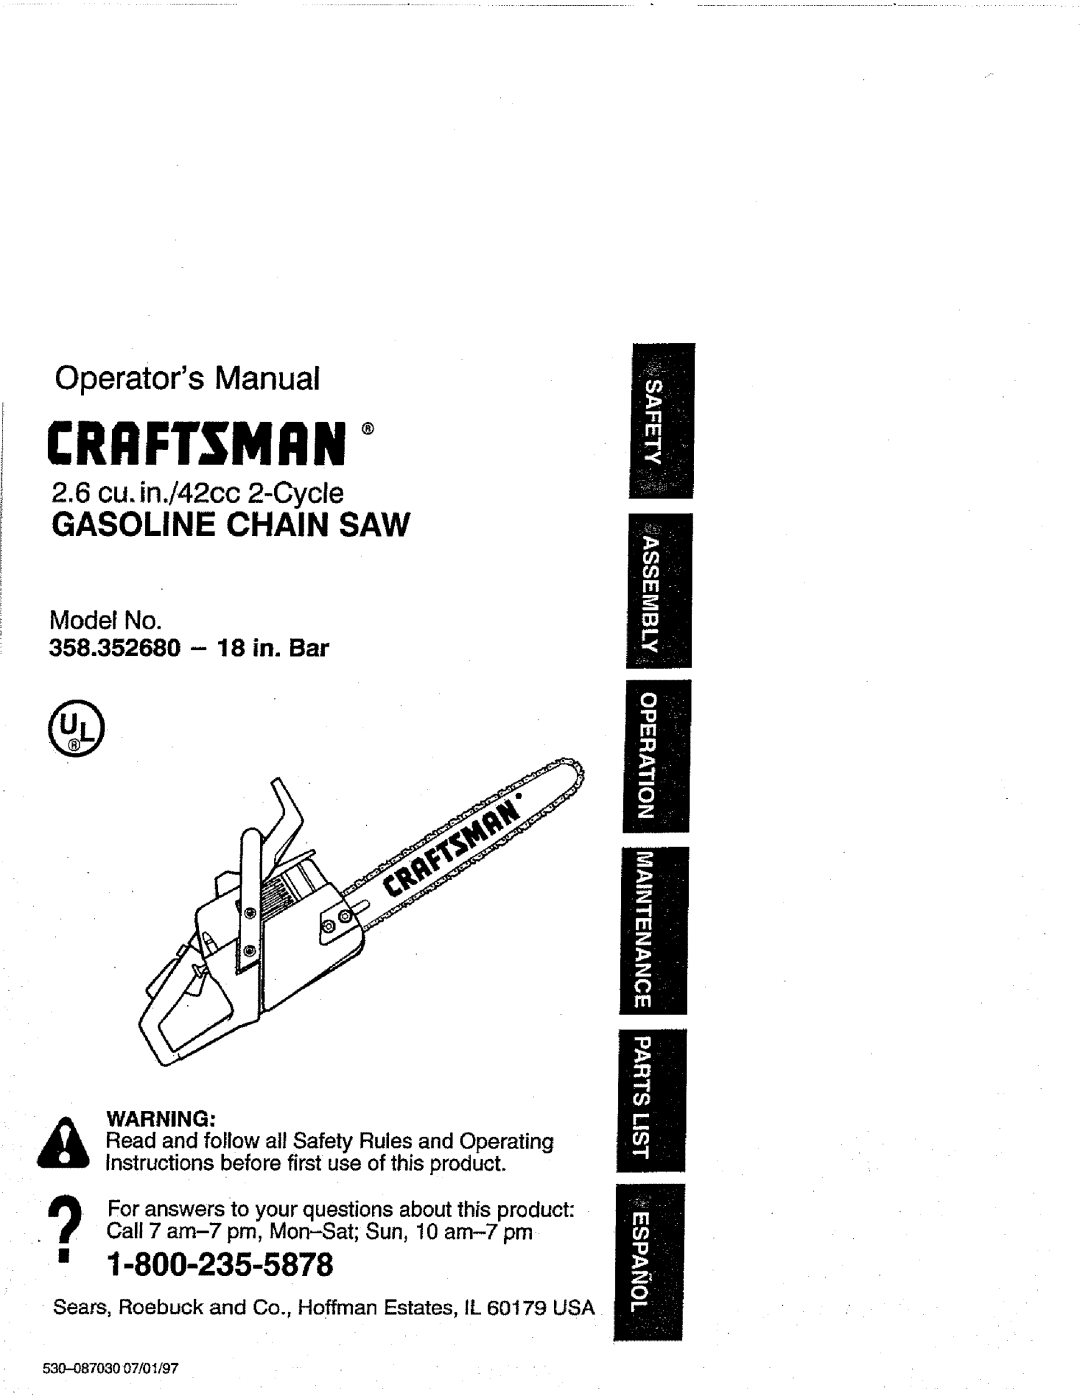 Craftsman 358.352680 - 18 IN. BAR manual 1-800-235-5878, Model No, 358.352680 - 18 in. Bar, CRRFTSNRNo, Operators Manual 